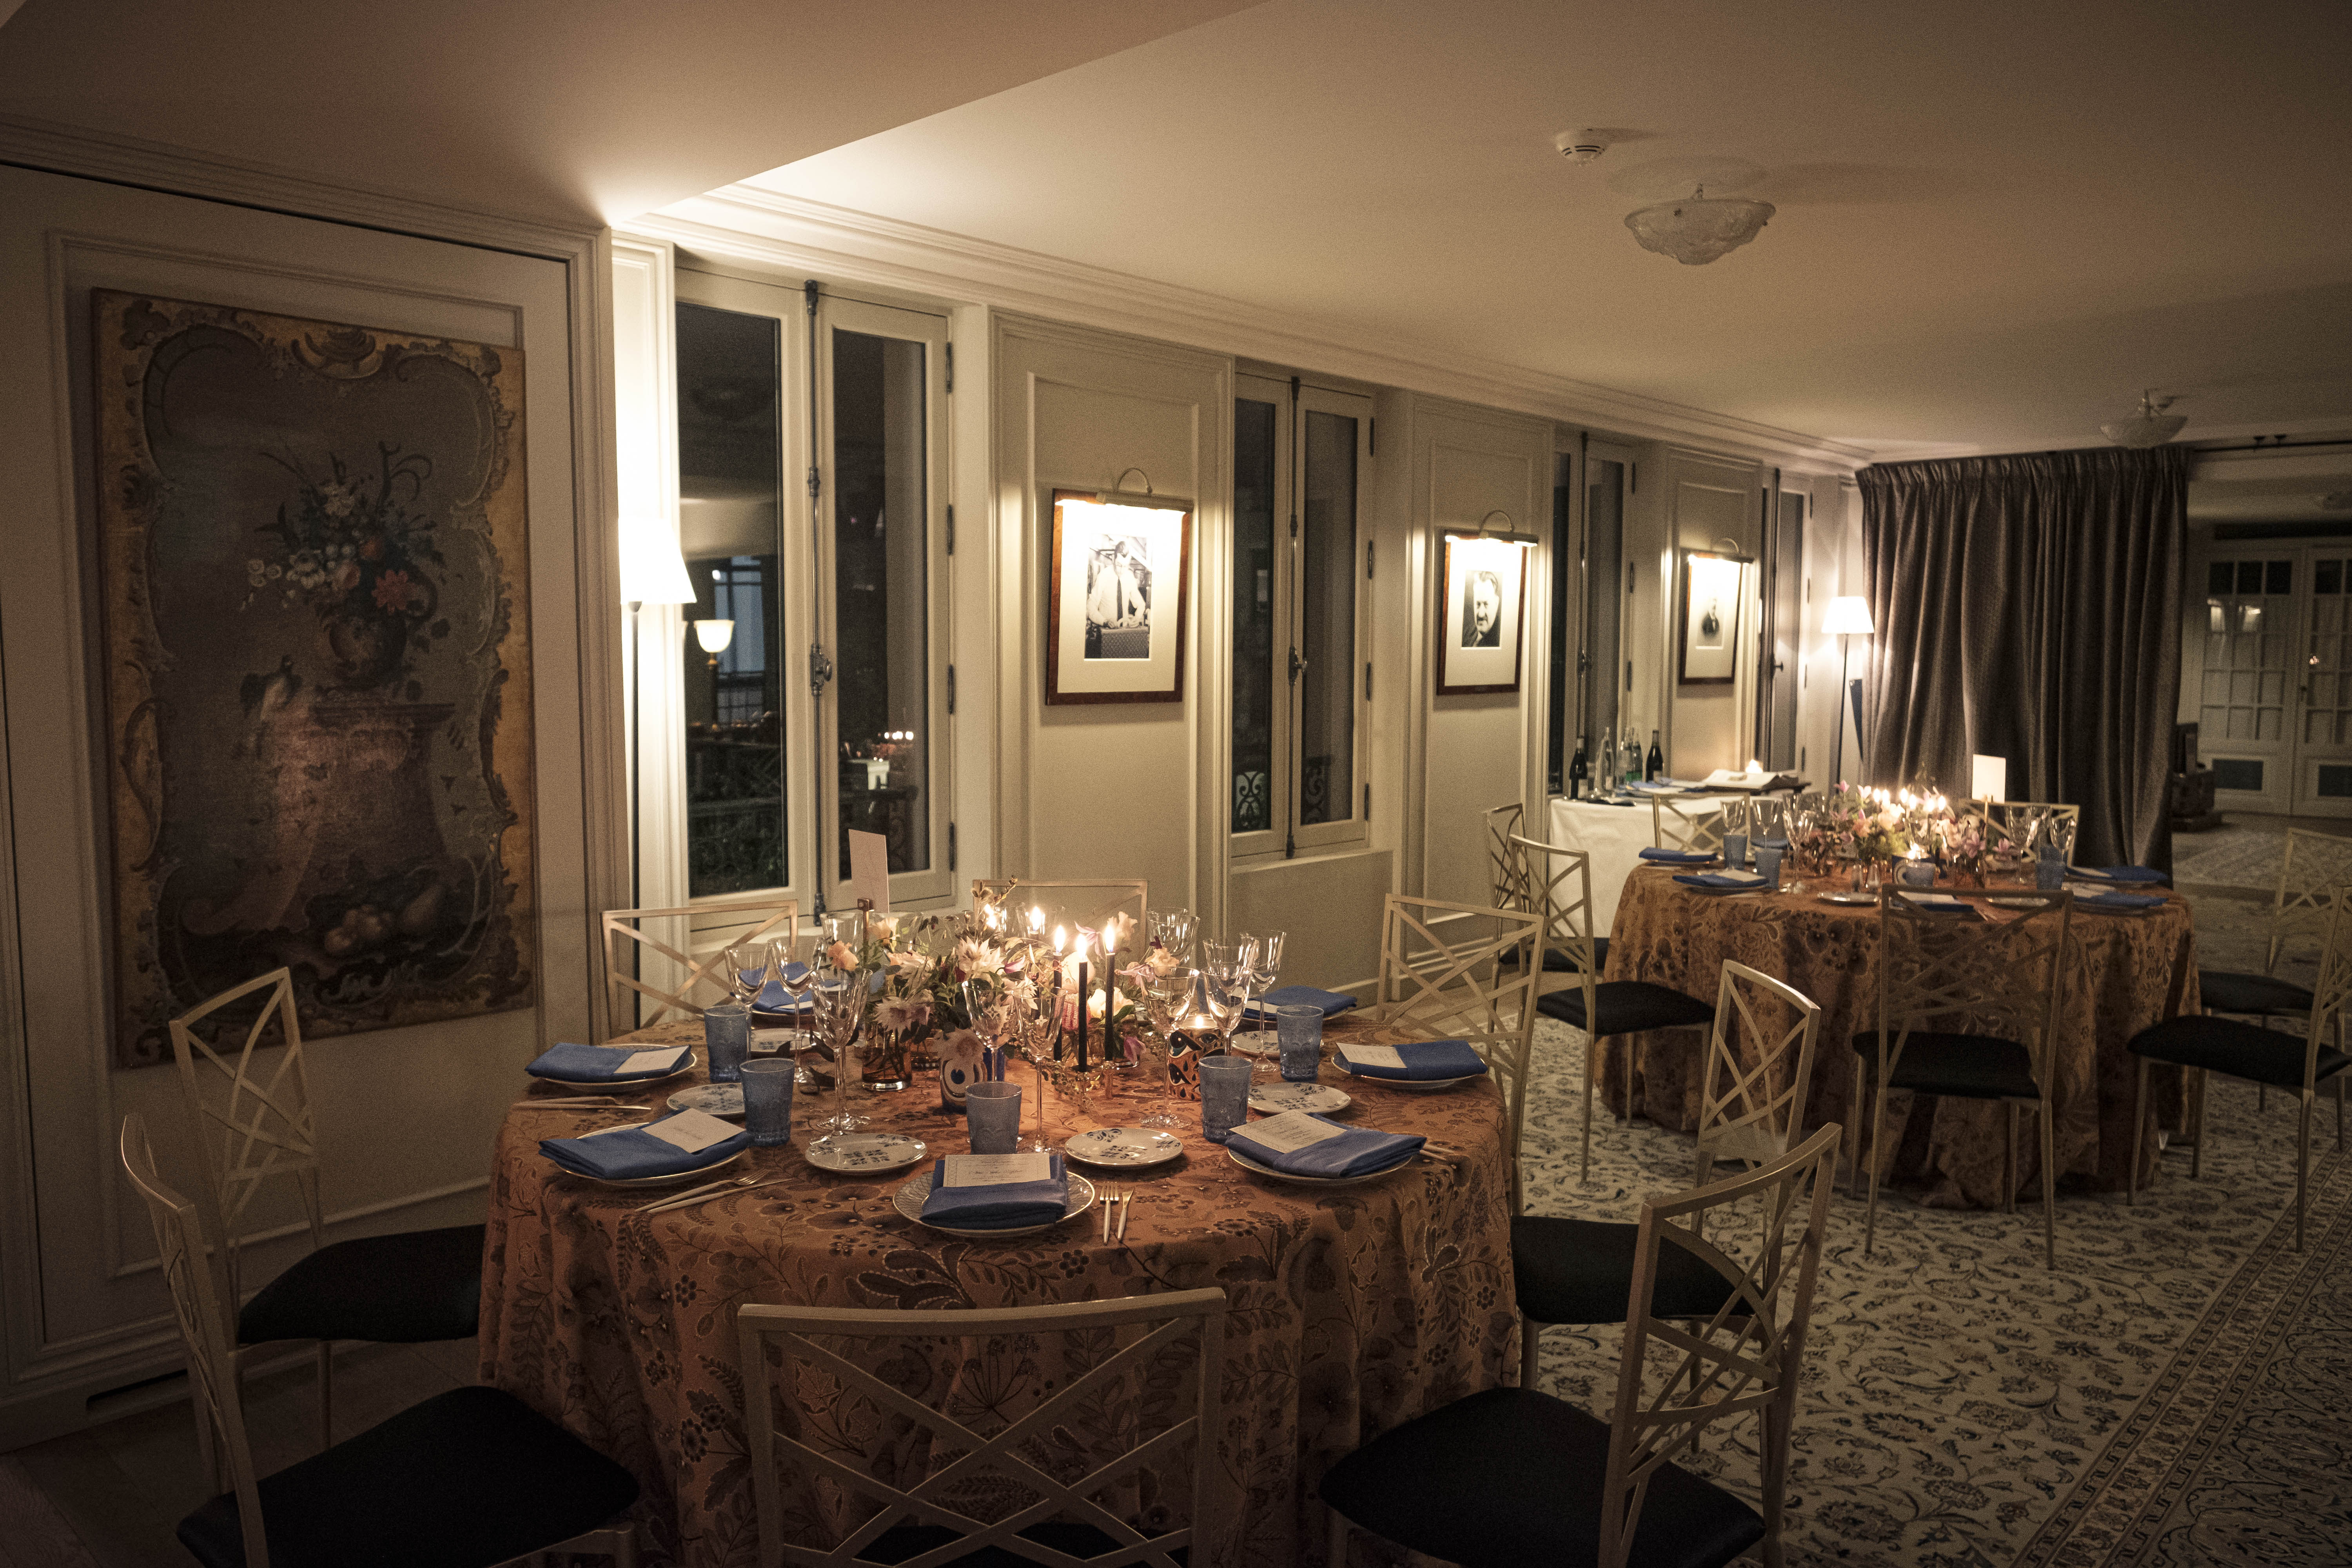 Diner privé dans la maison de famille Louis Vuitton